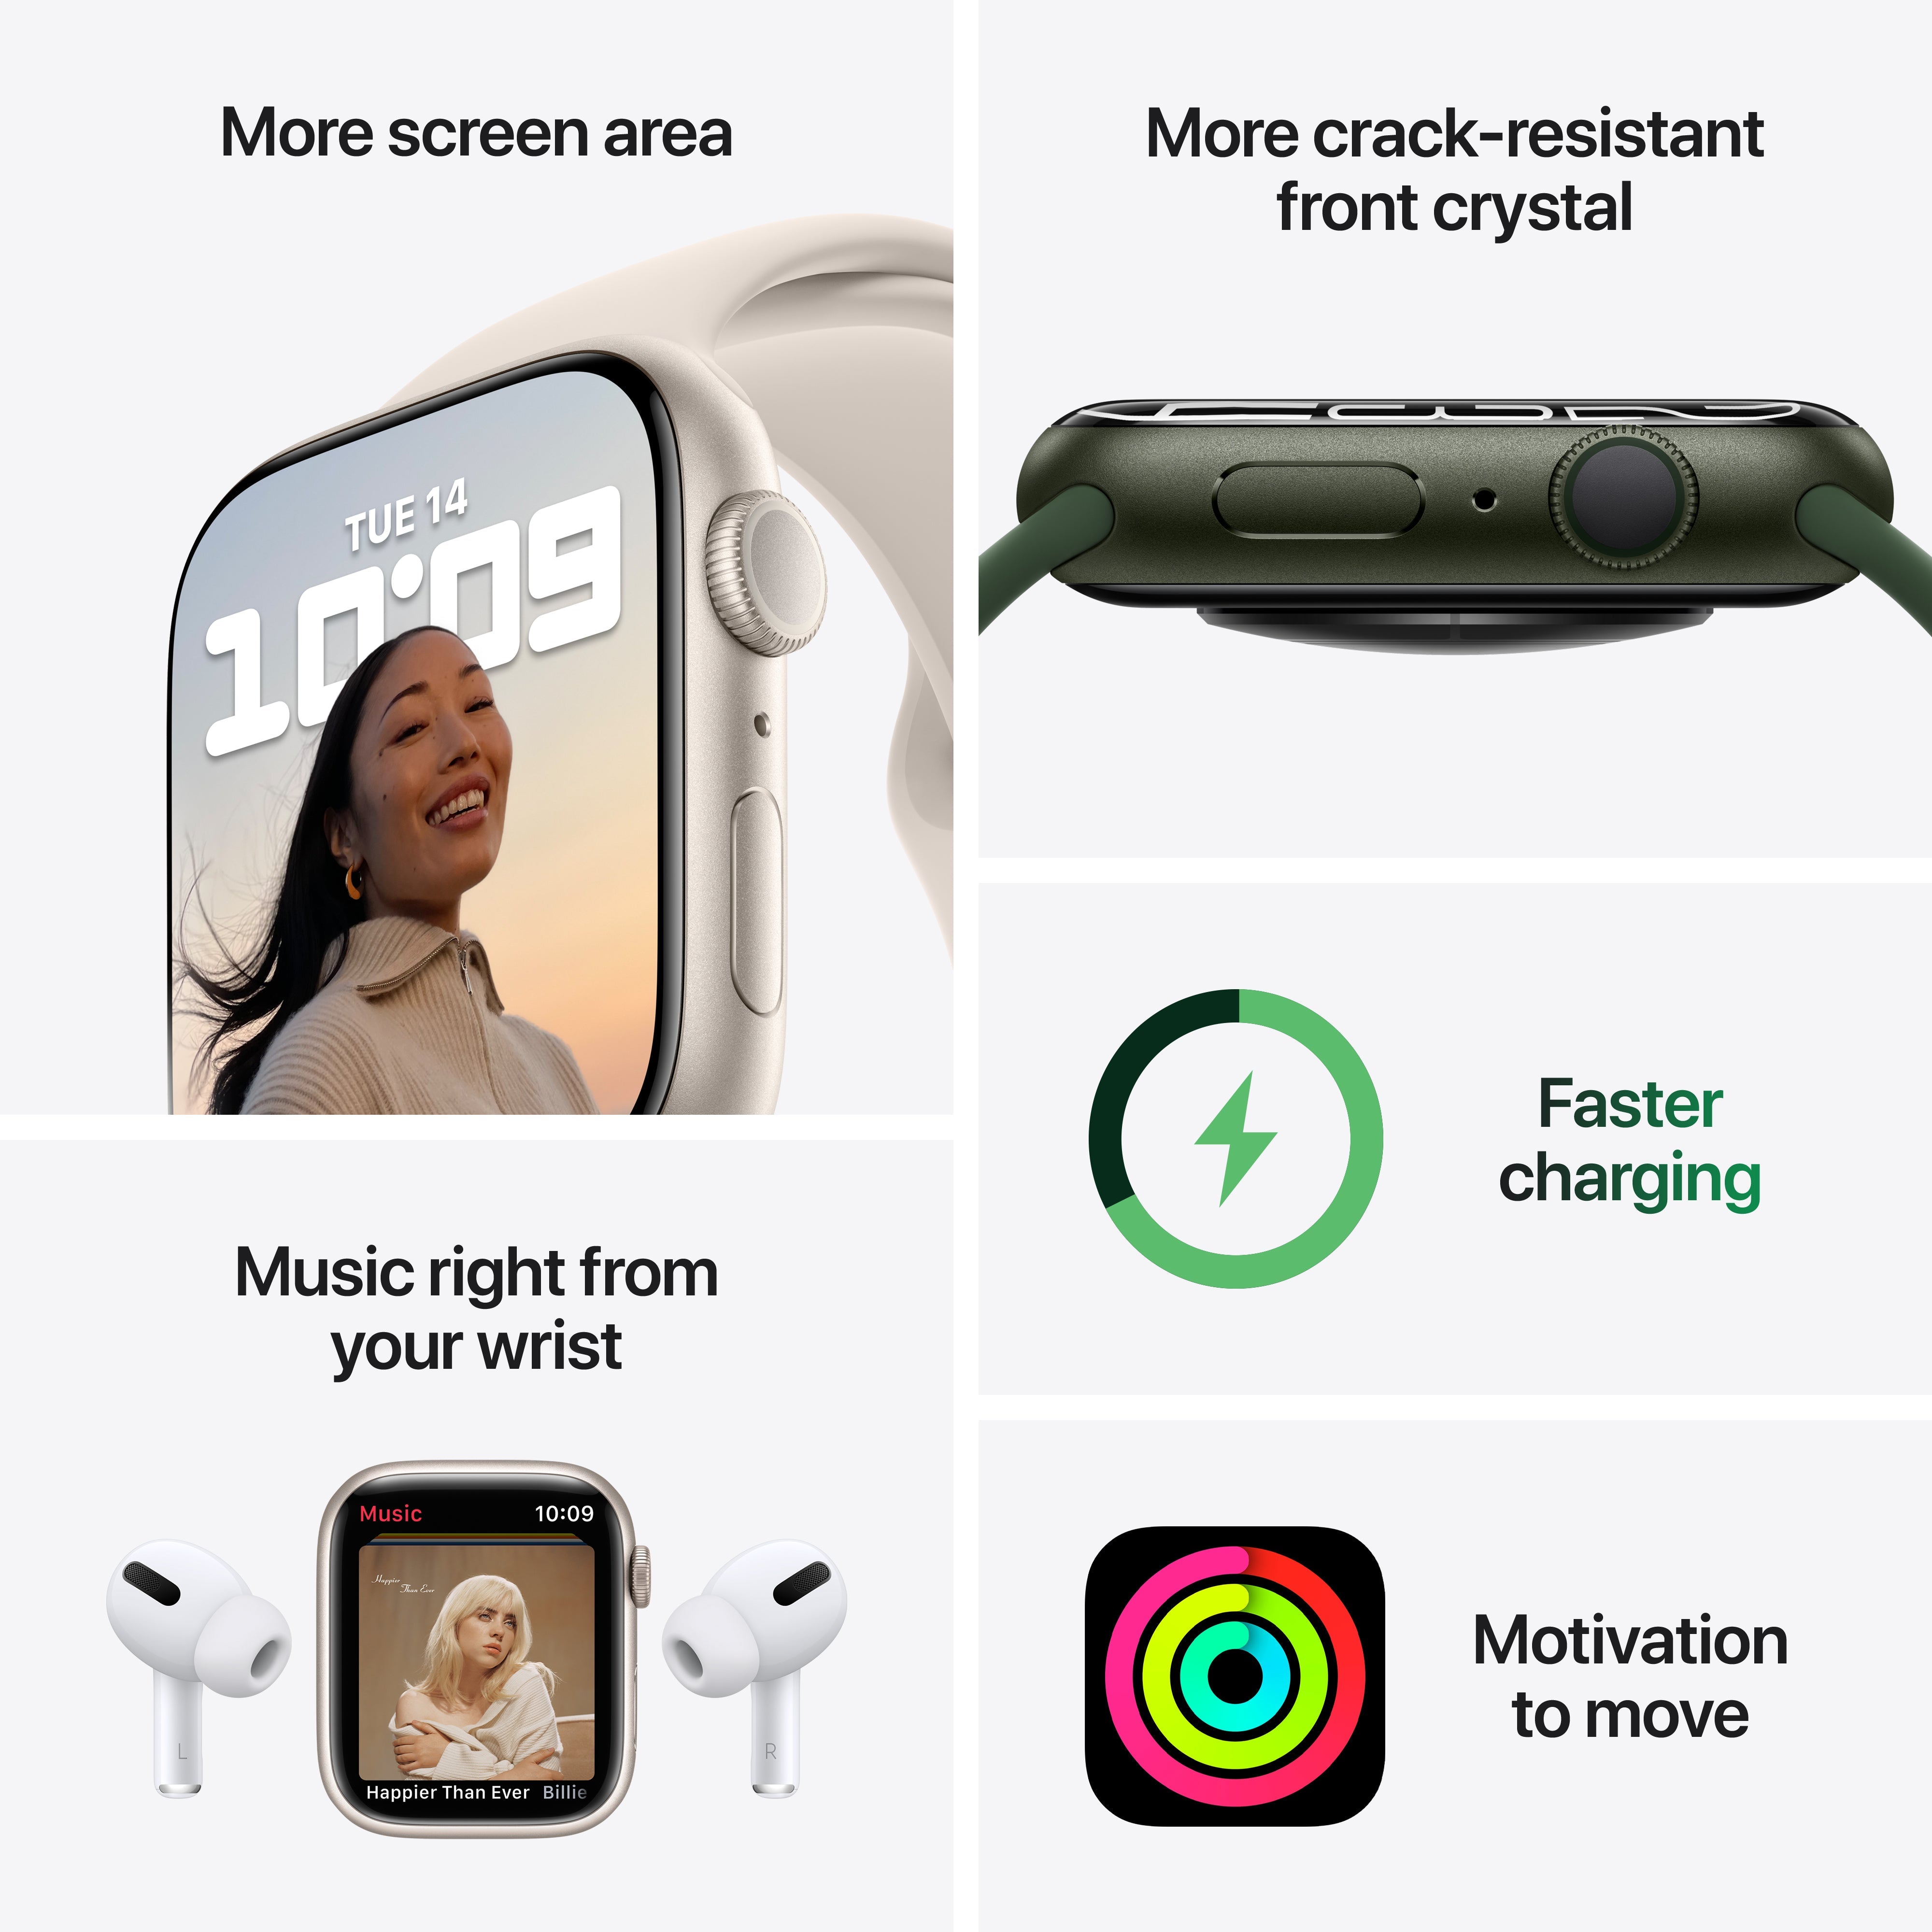 Apple Watch Nike Series 7 GPS